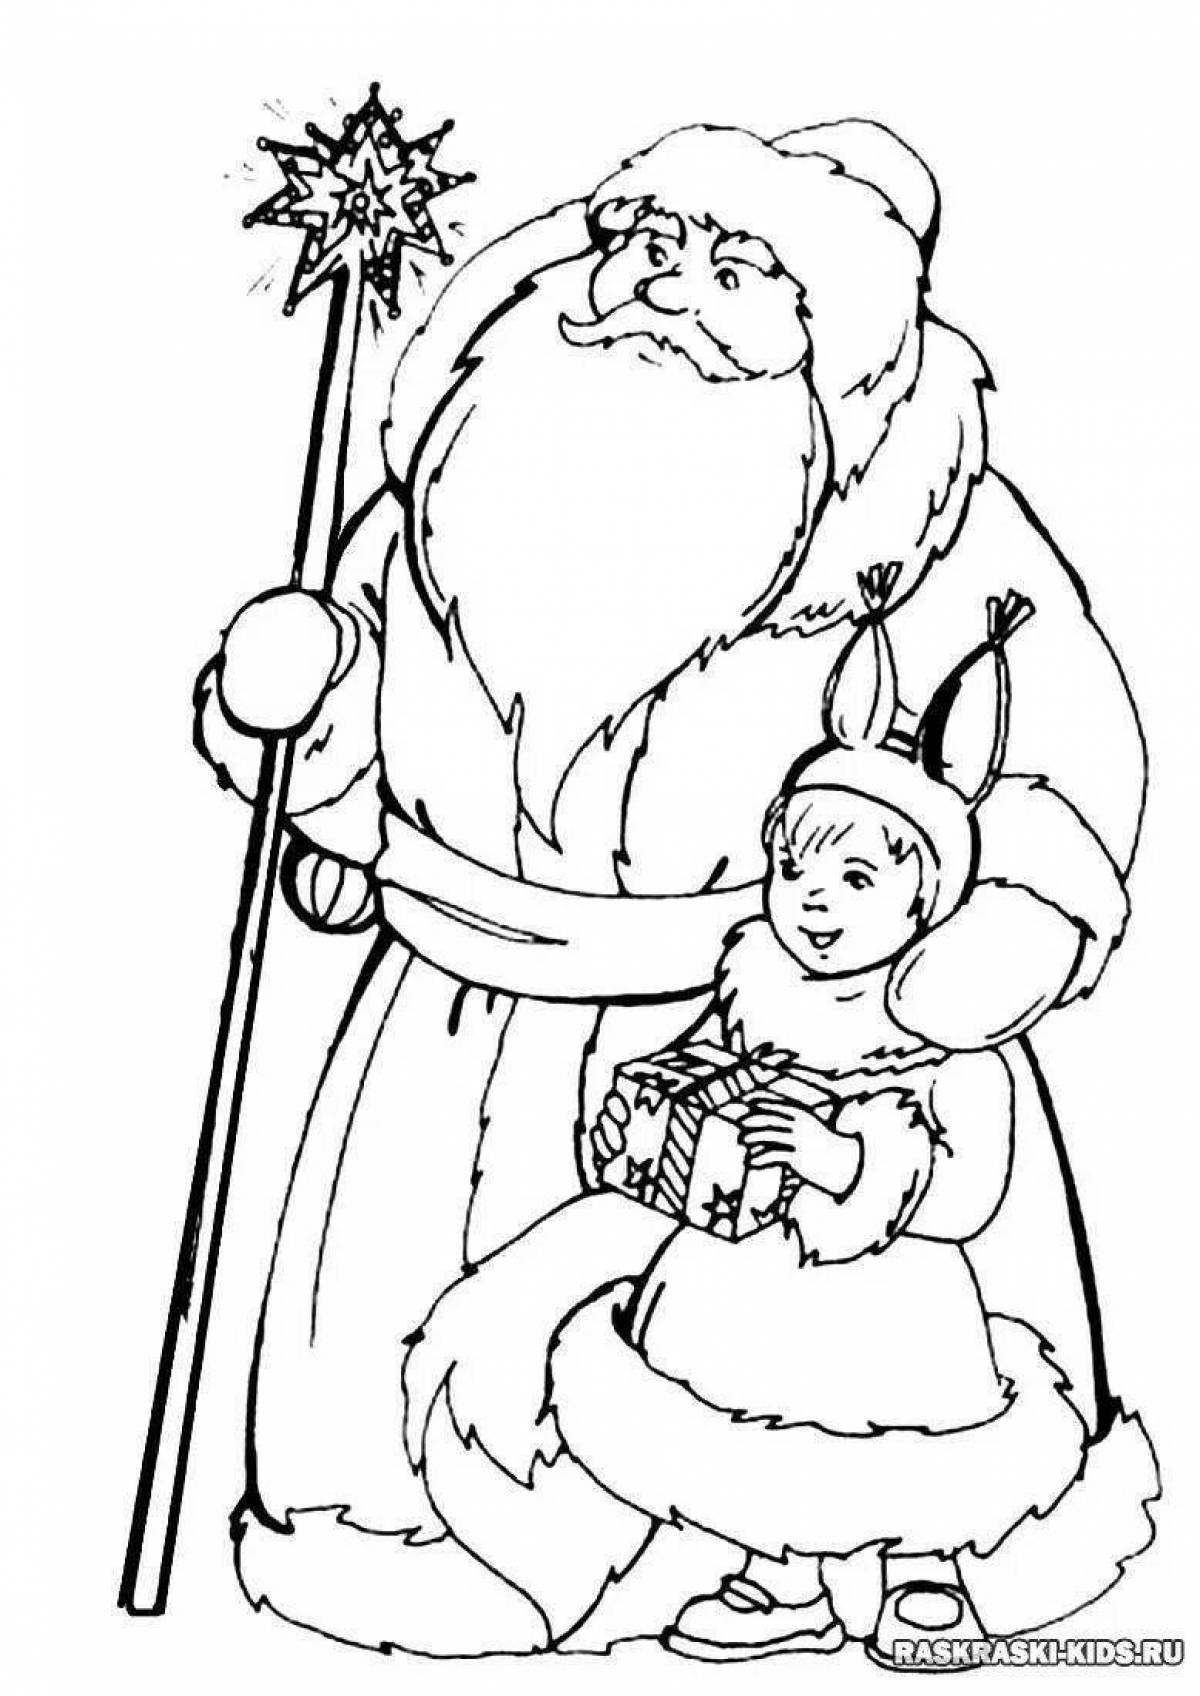 Сказочный санта-клаус и снегурочка рождественская раскраска